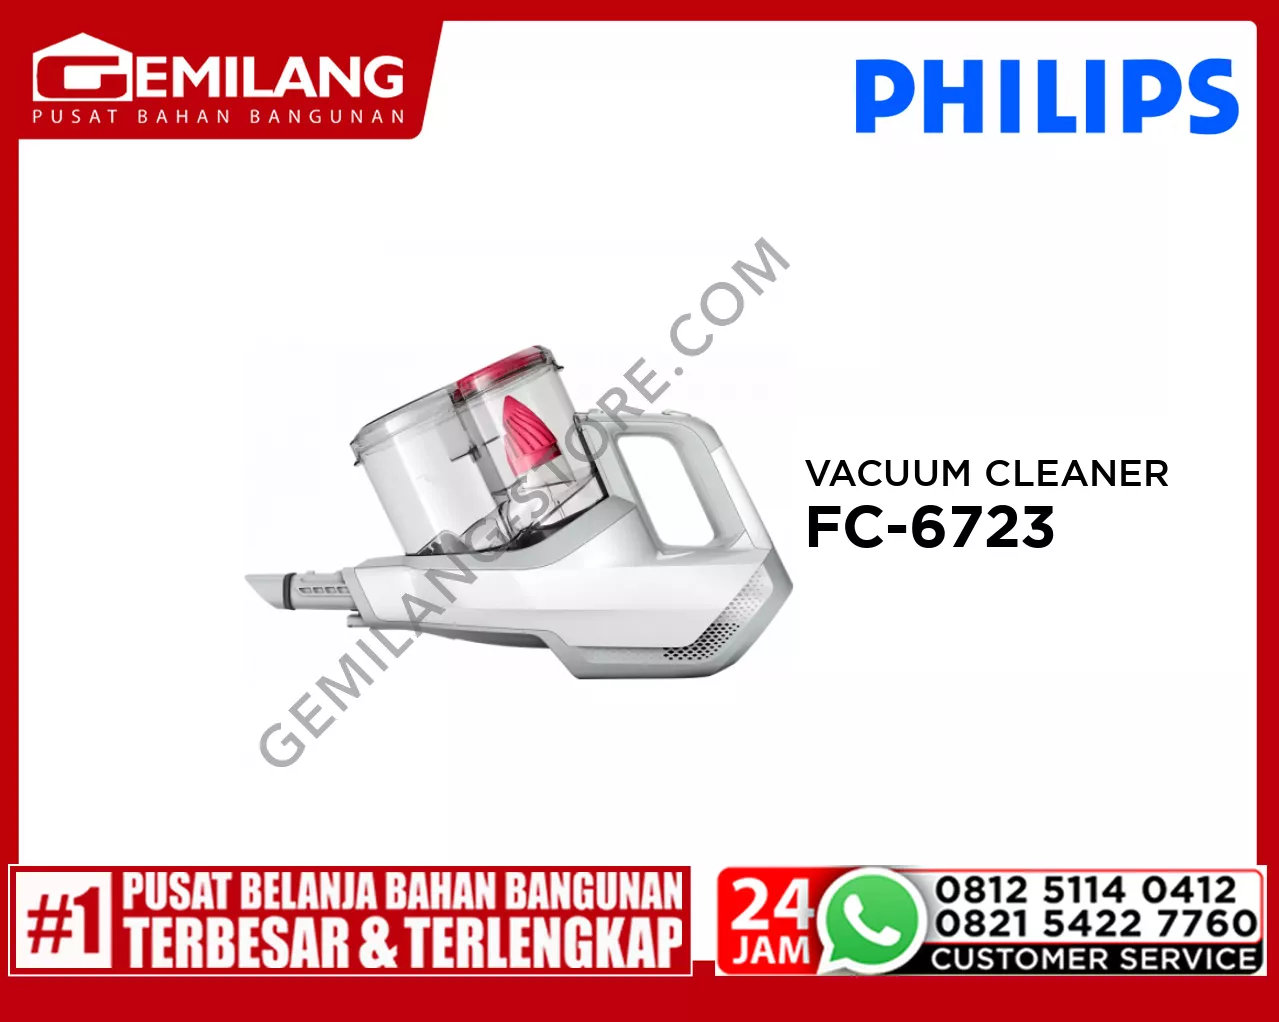 PHILIPS VACUUM CLEANER FC-6723